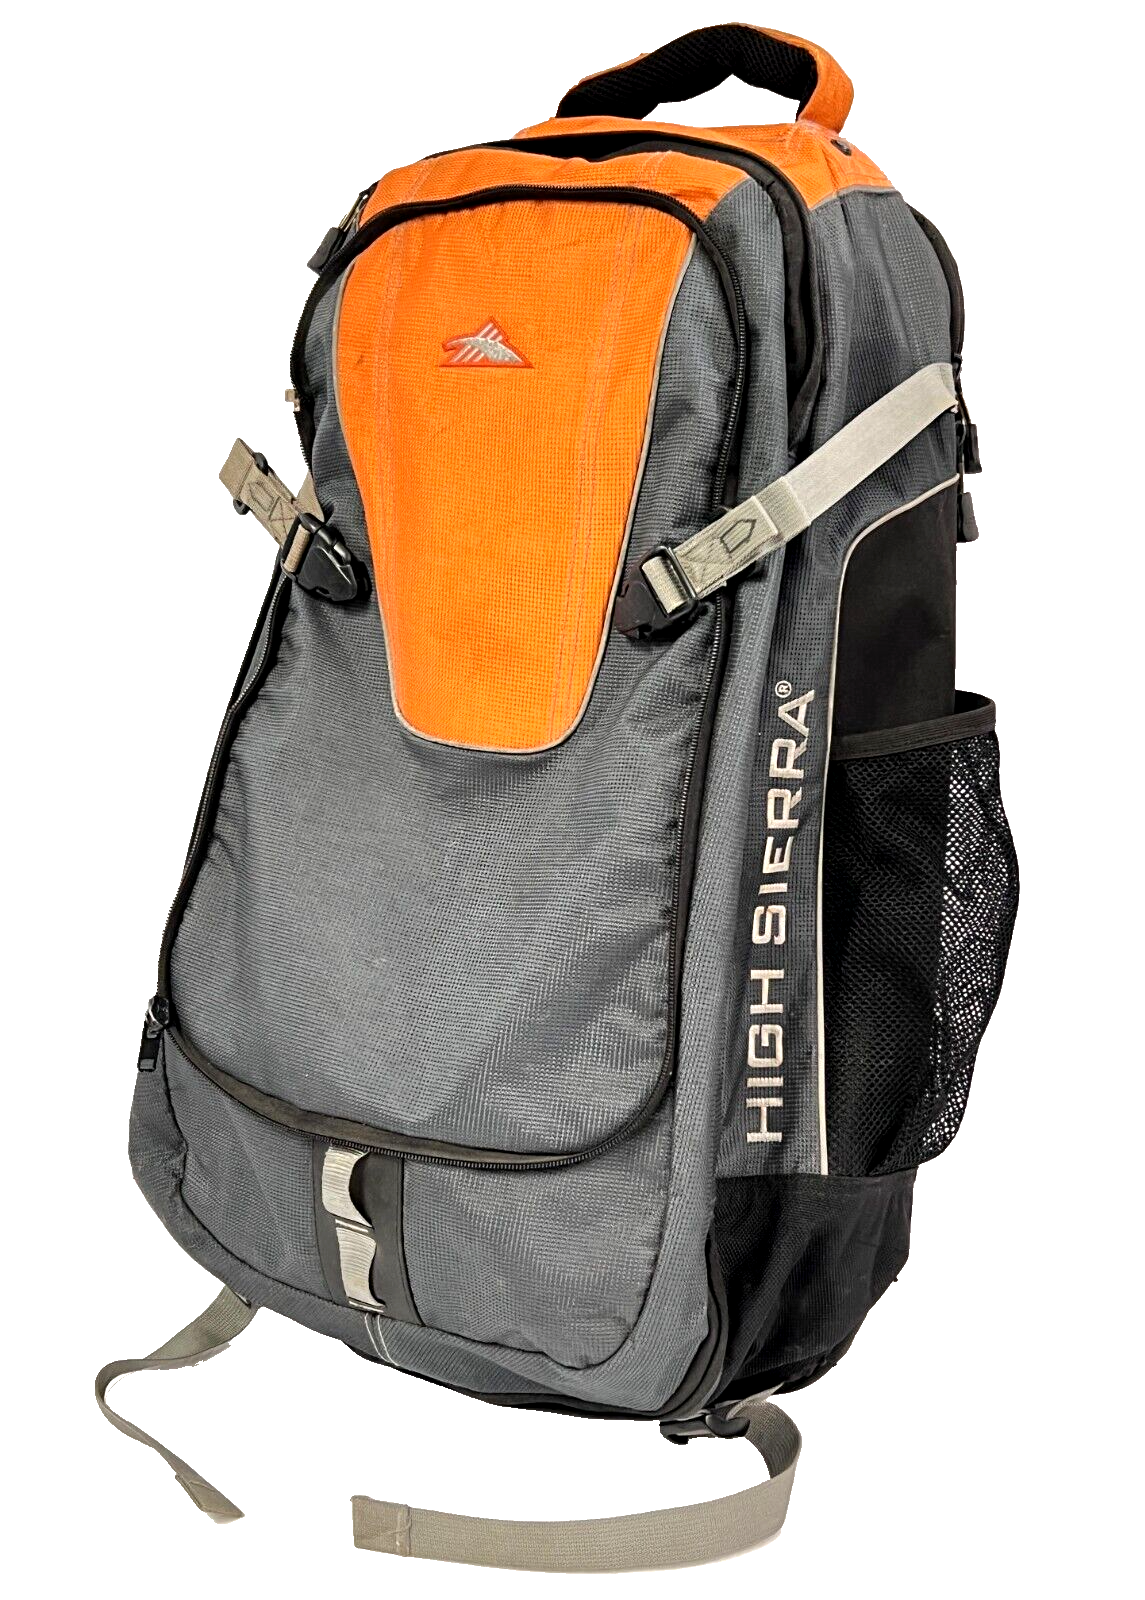 High Sierra Ergo-Fit Outdoor Hiking Travel Backpack w/ Waist Strap - Grey/Orange - $55.19